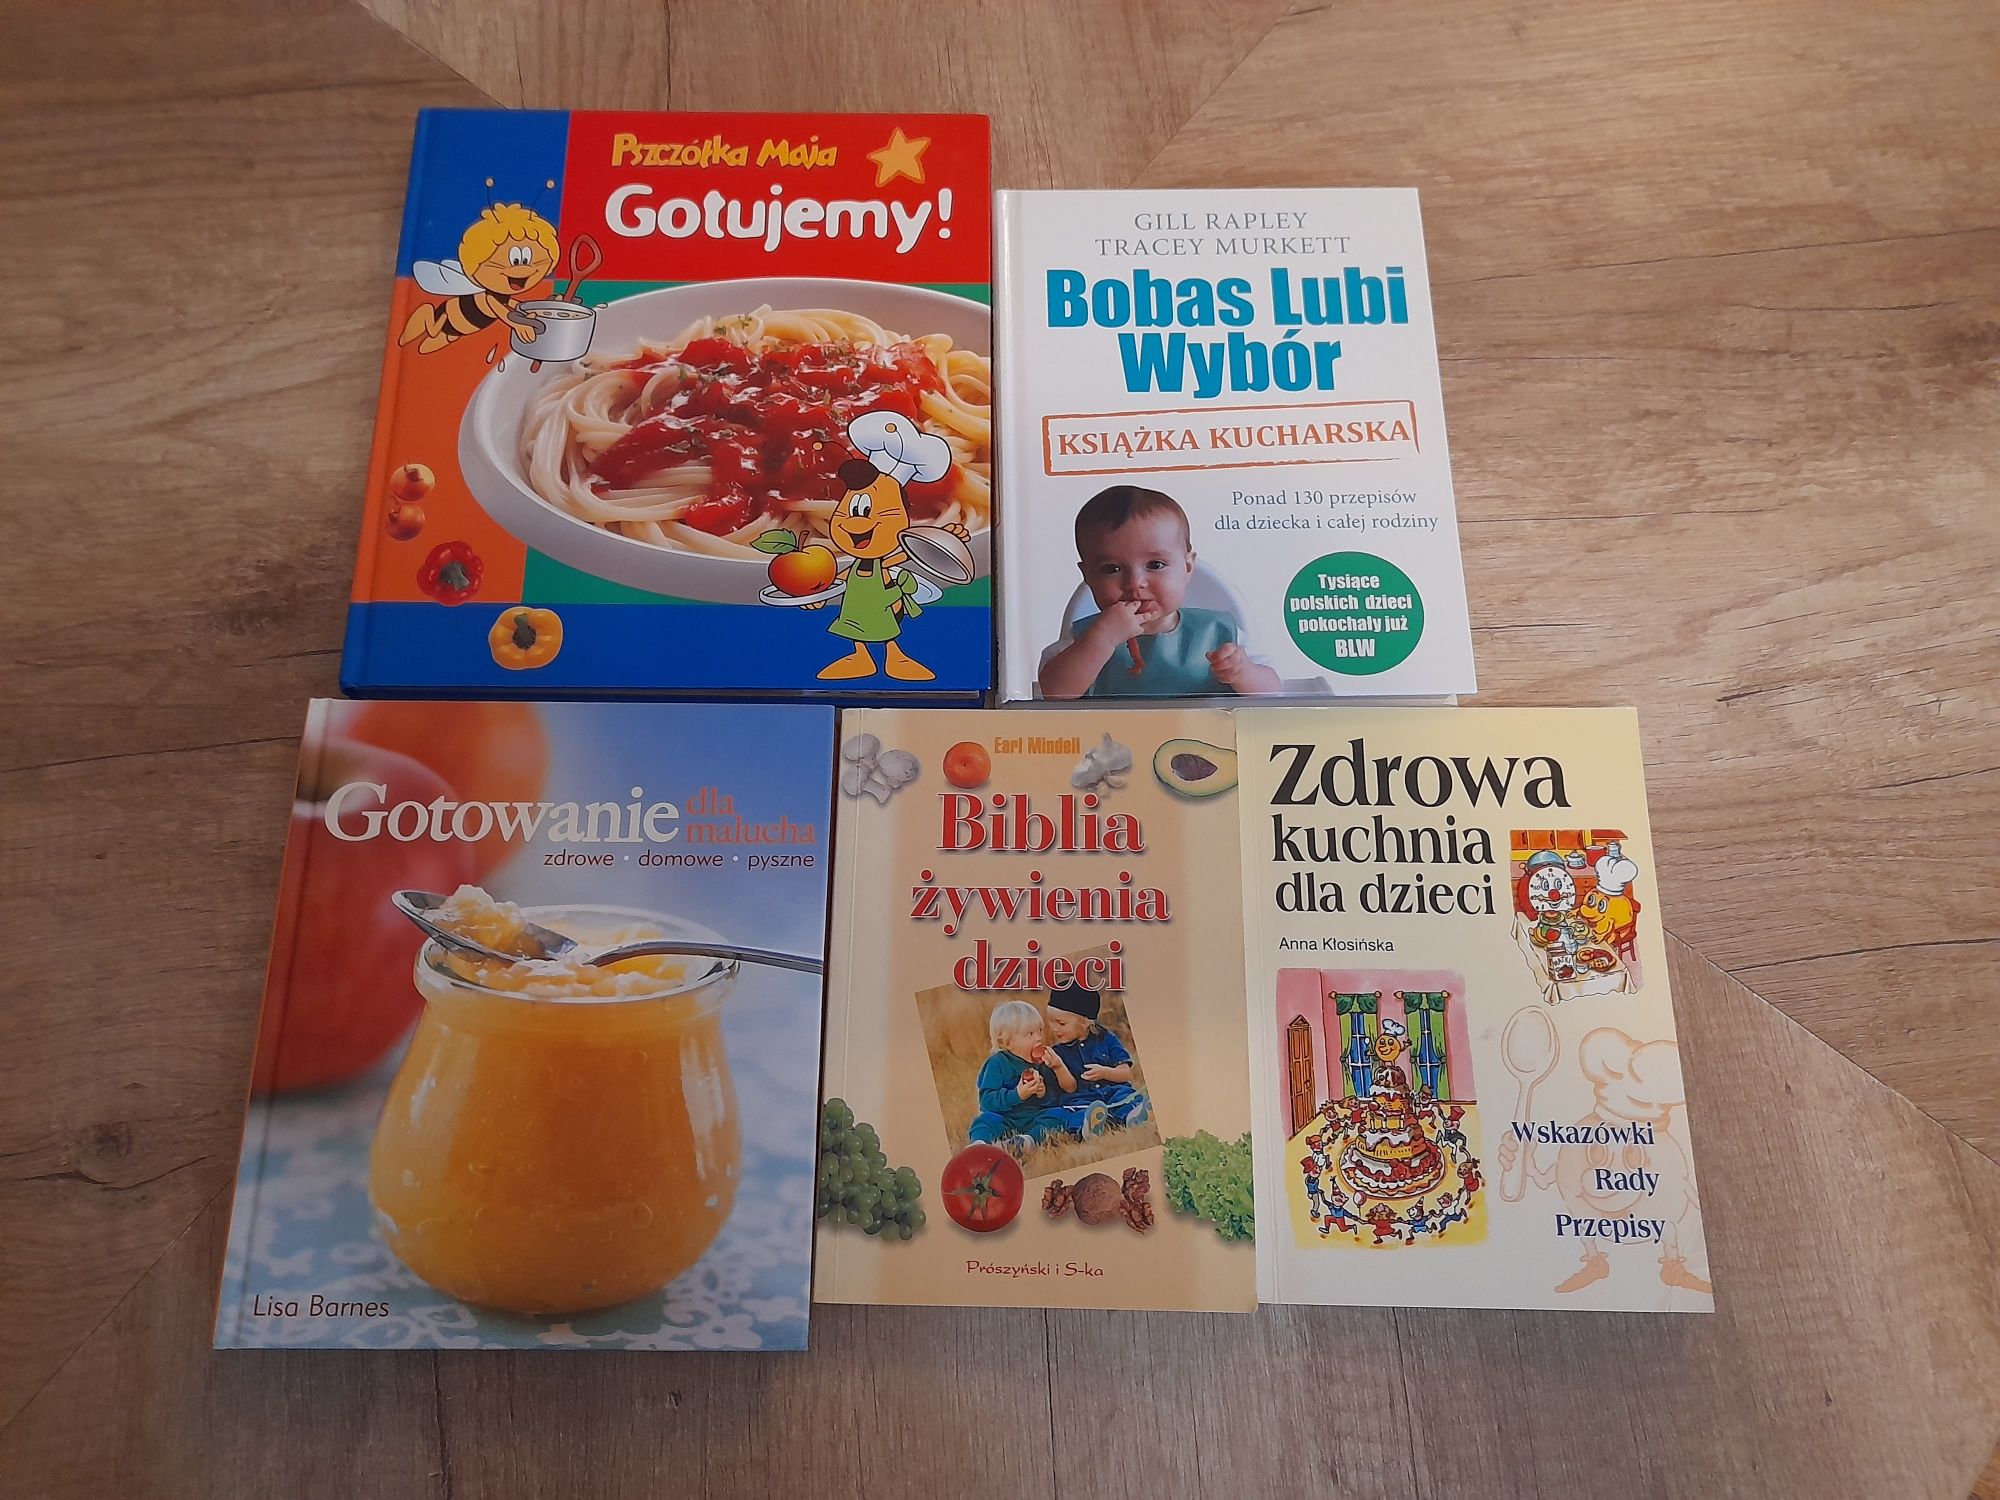 5 książek Bobas lubi wybór gotowanie dla malucha zdrowa kuchnia dla dz